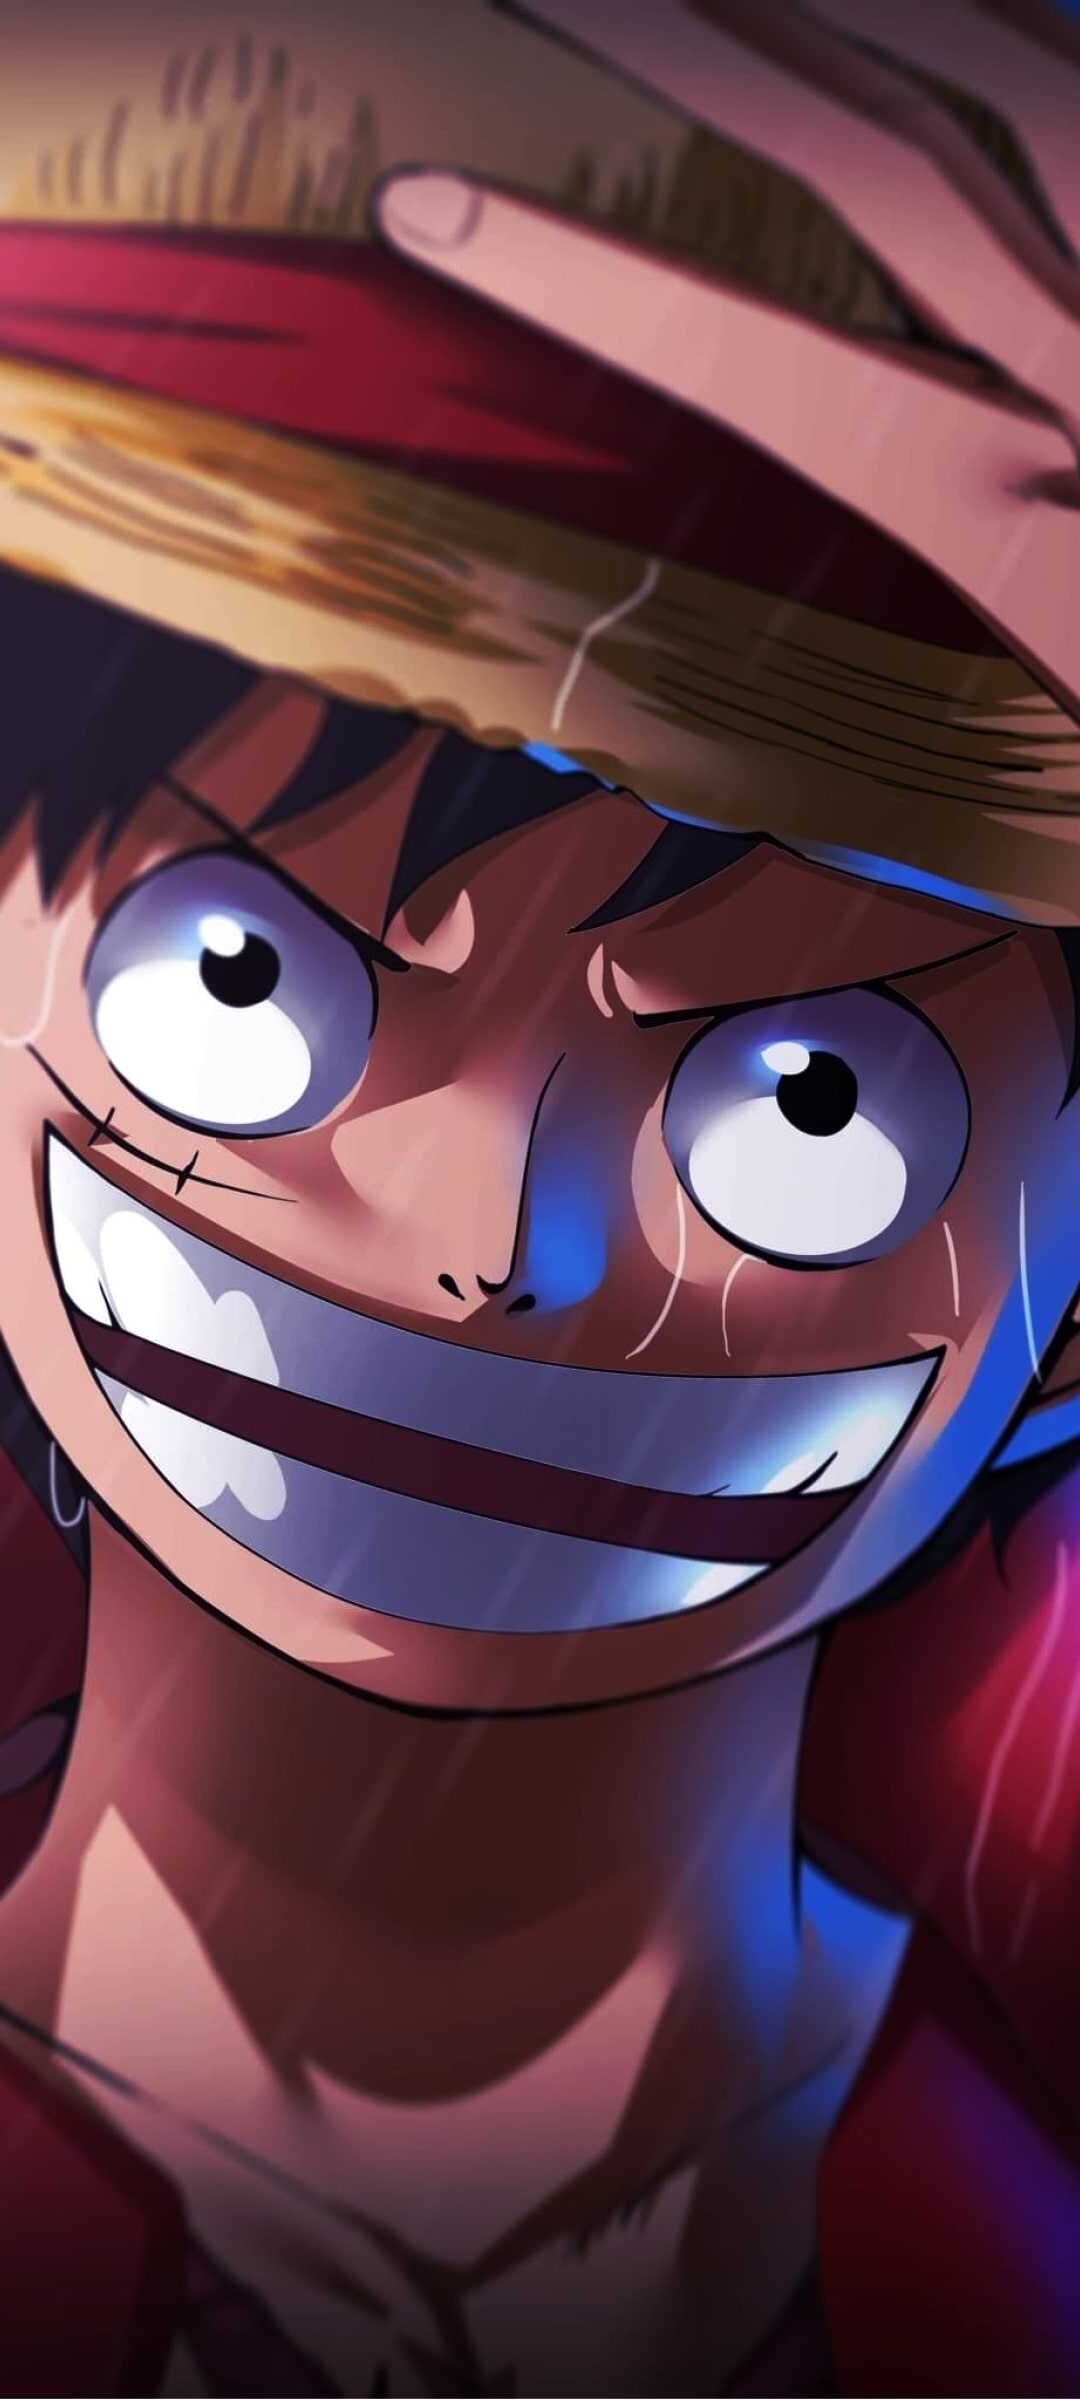 Luffy hình nền - Luffy, một nhân vật phổ biến trong anime One Piece, được yêu thích bởi rất nhiều người hâm mộ. Với hình nền Luffy, bạn sẽ được chiêm ngưỡng những hình ảnh đẹp mắt của anh chàng này, từ những giây phút cười đùa cho đến những trận chiến hào hùng.